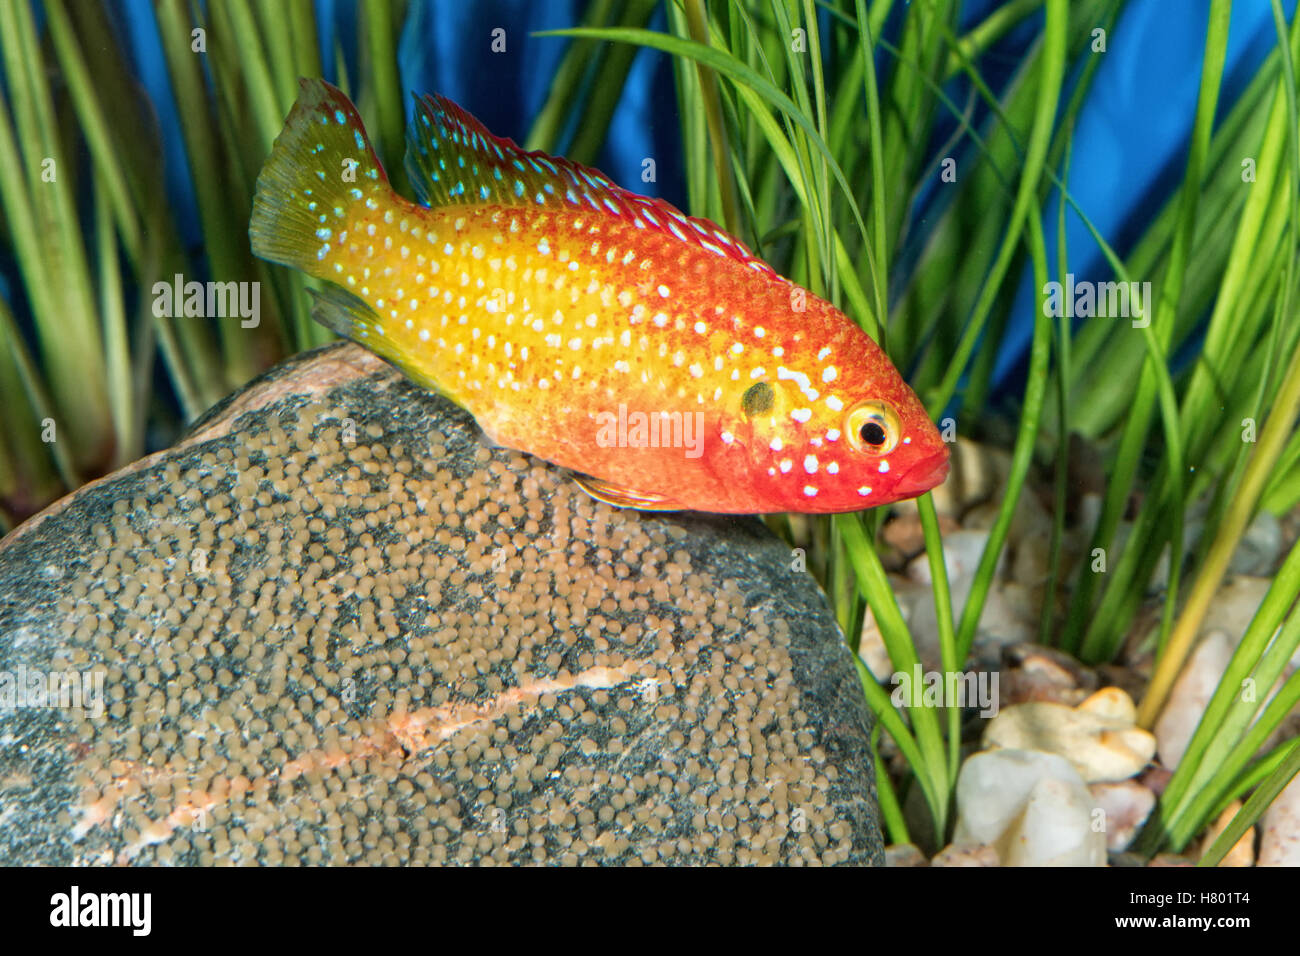 Portrait of freshwater cichlid fish (Hemichromis sp.) in aquarium Stock Photo